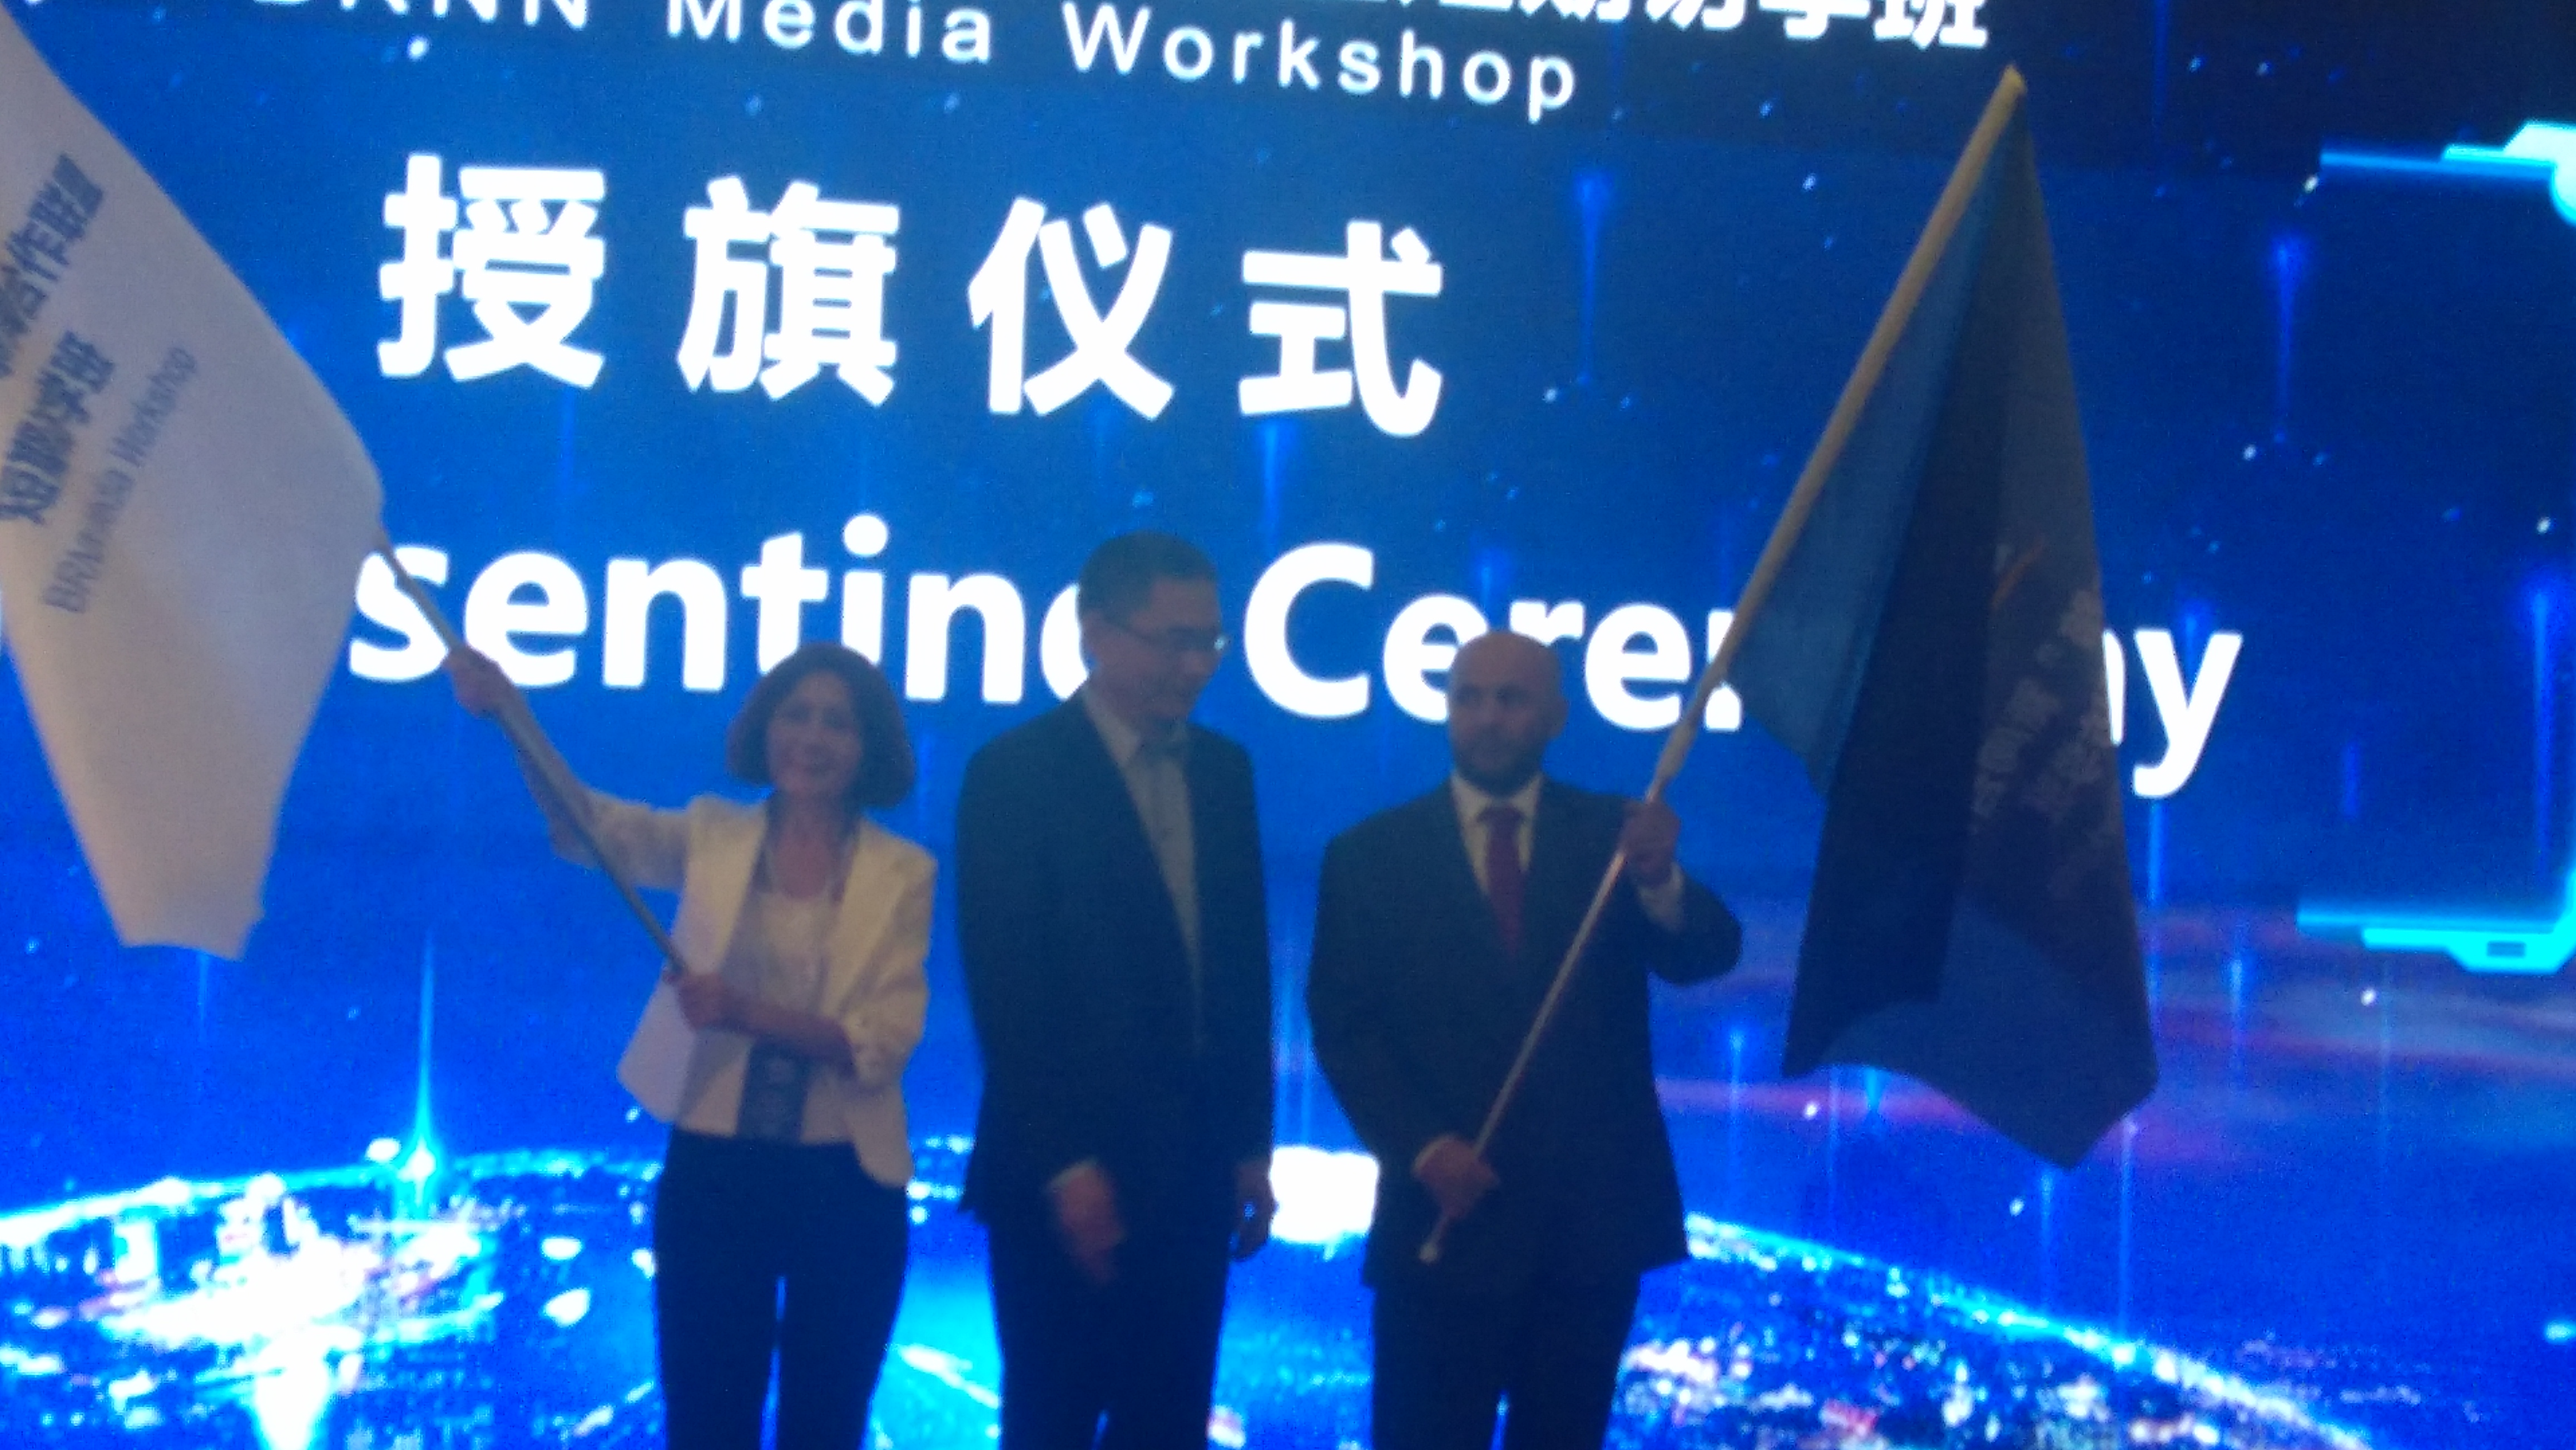 انطلاق فعاليات ندوة الإعلام لمنتدى الحزام والطريق فى بكين  (6)